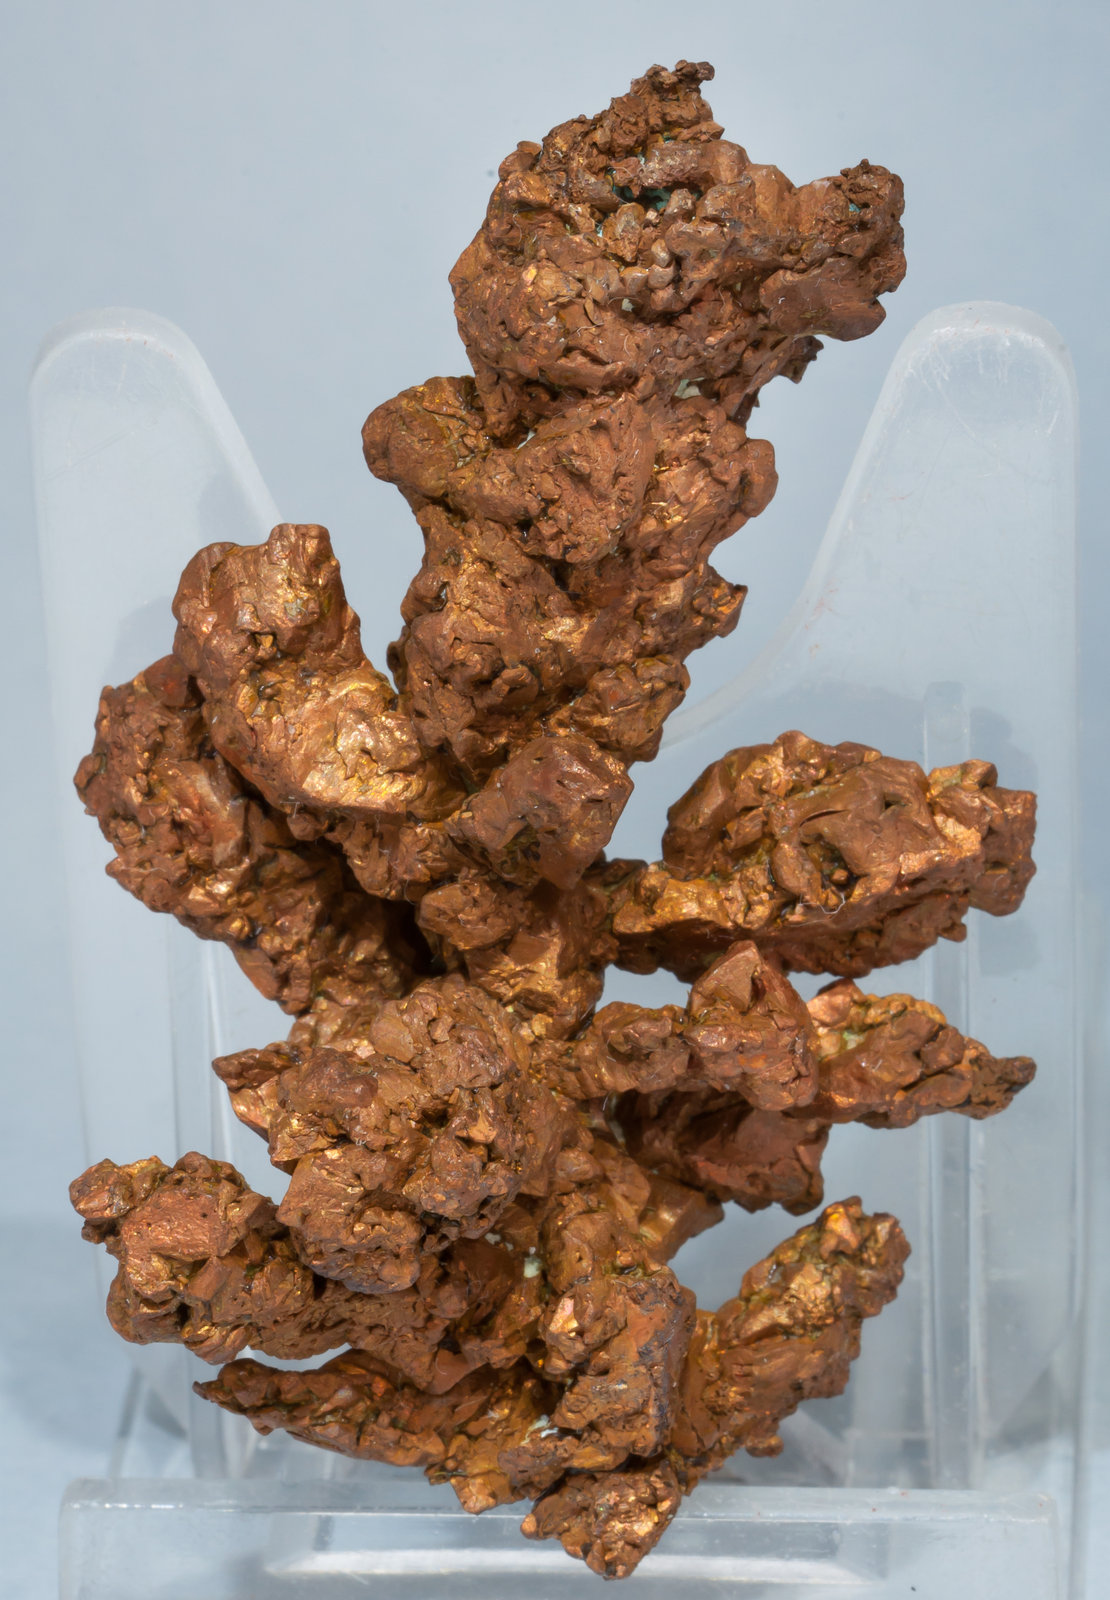 specimens/s_imagesAE8/Copper-TE27AE8f.jpg